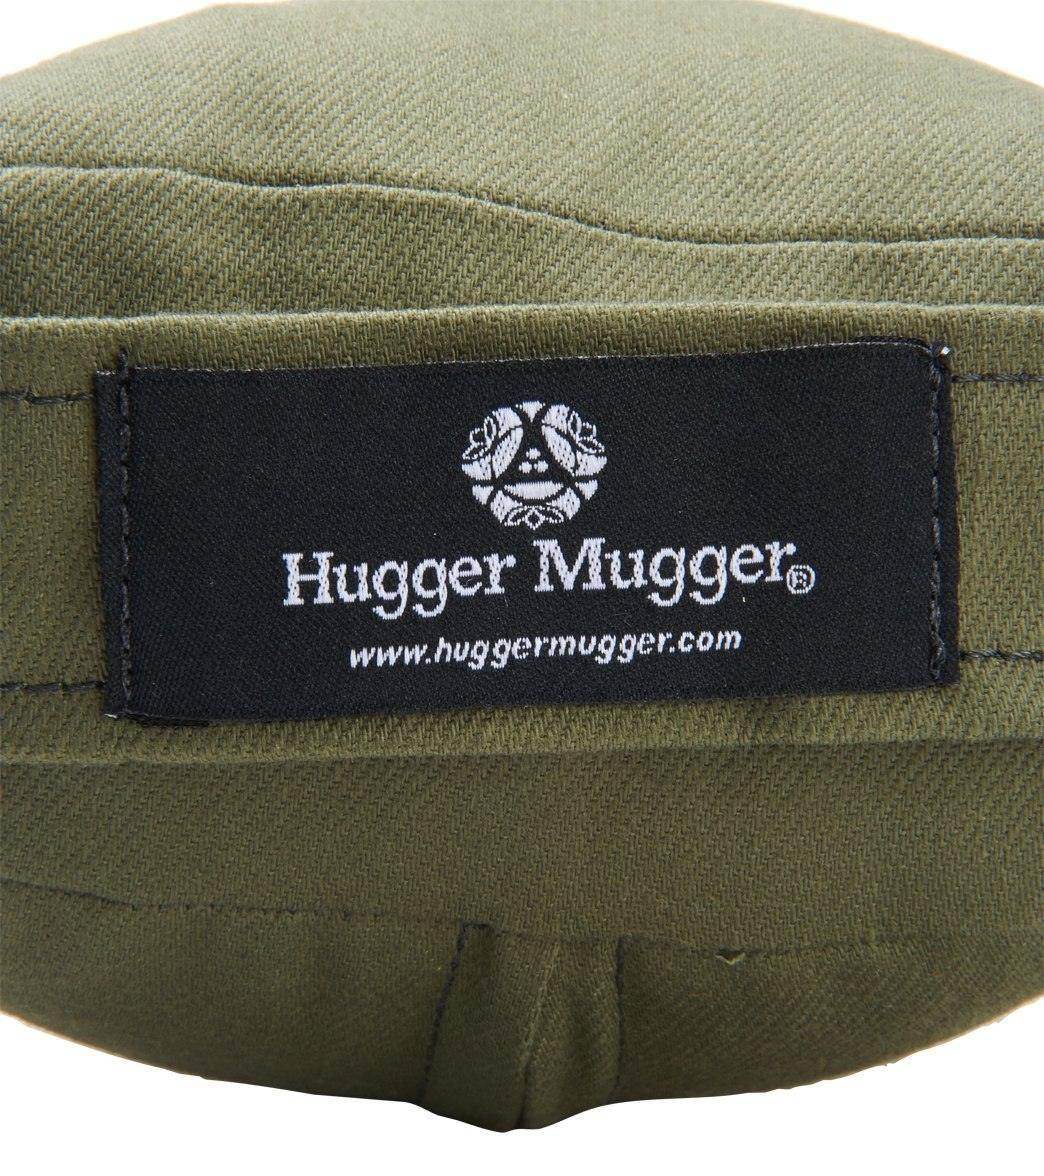 Hugger Mugger Standard Solid Yoga Bolster at YogaOutlet.com